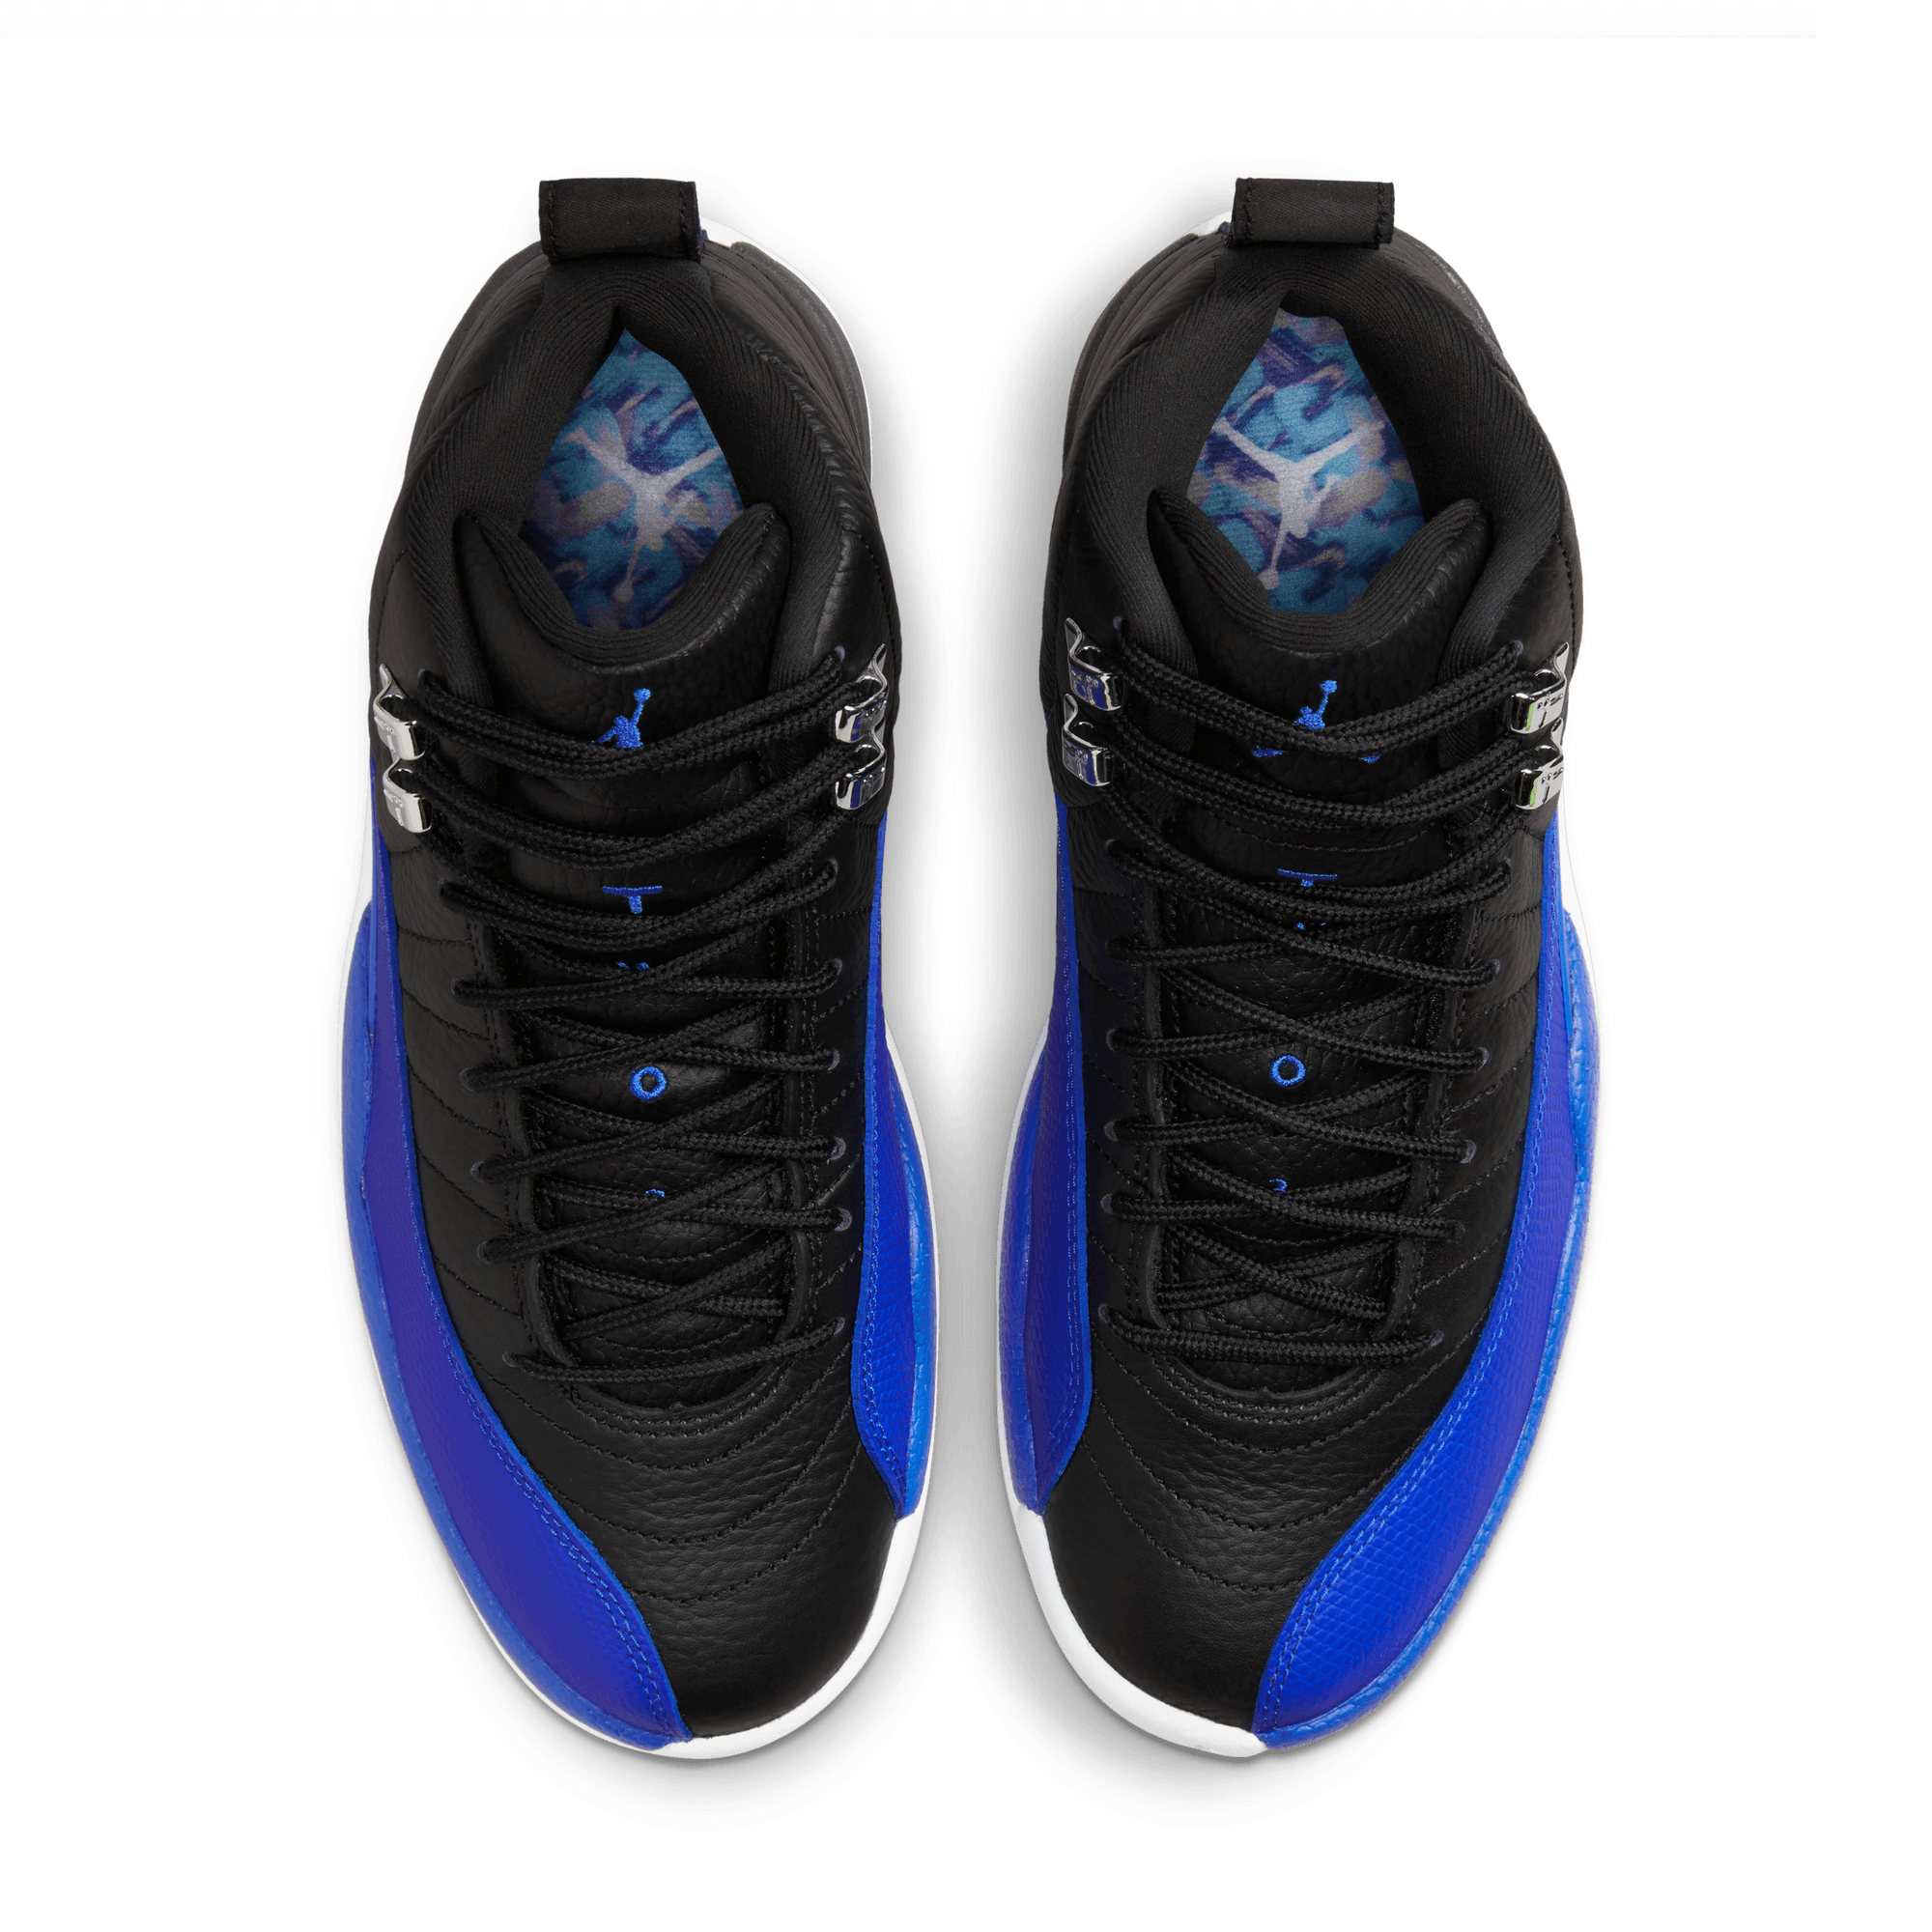 WMNS Nike Air Jordan 12 Retro